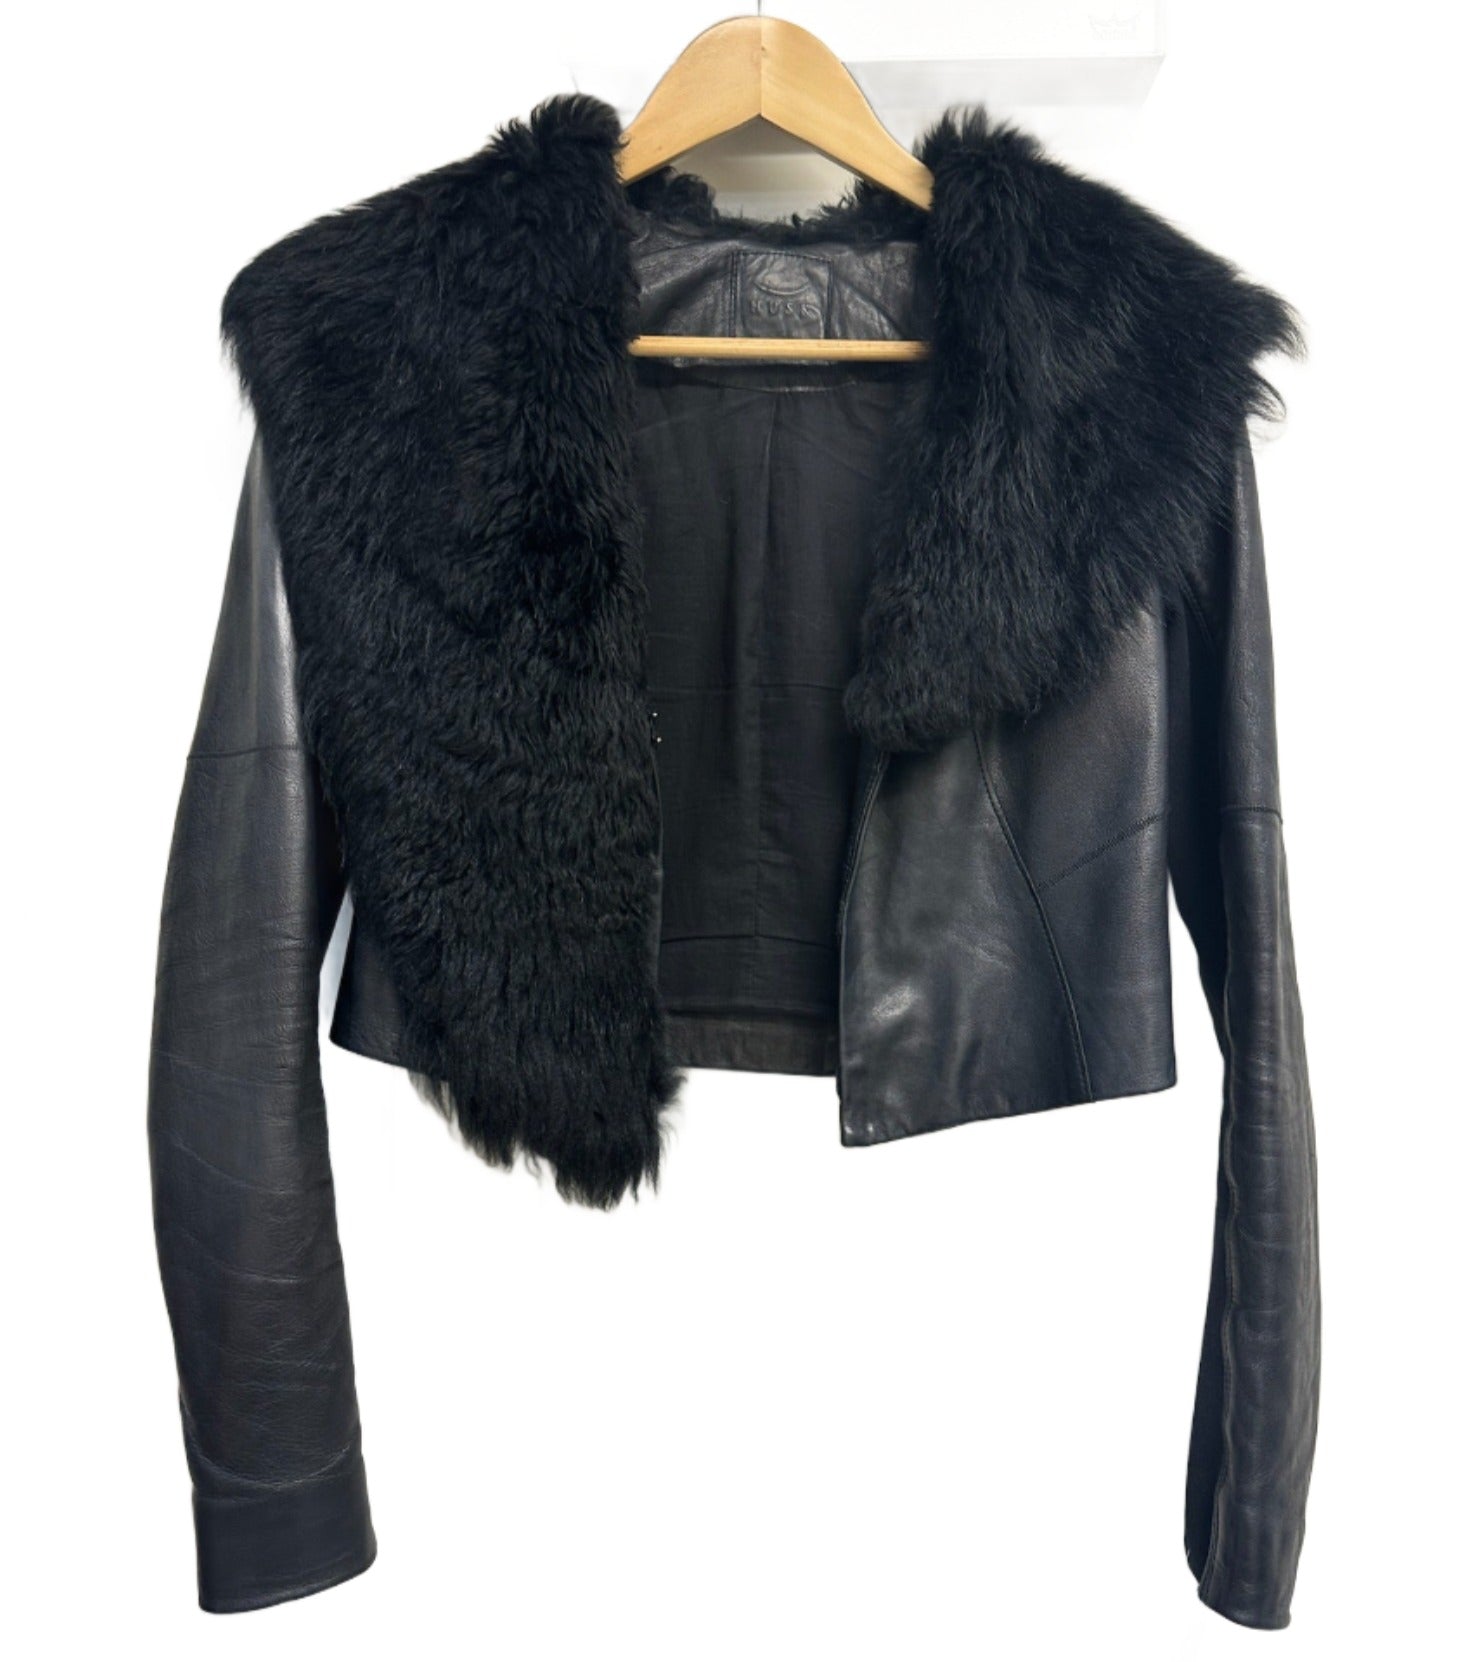 Husk Black Leather Jacket with Fur